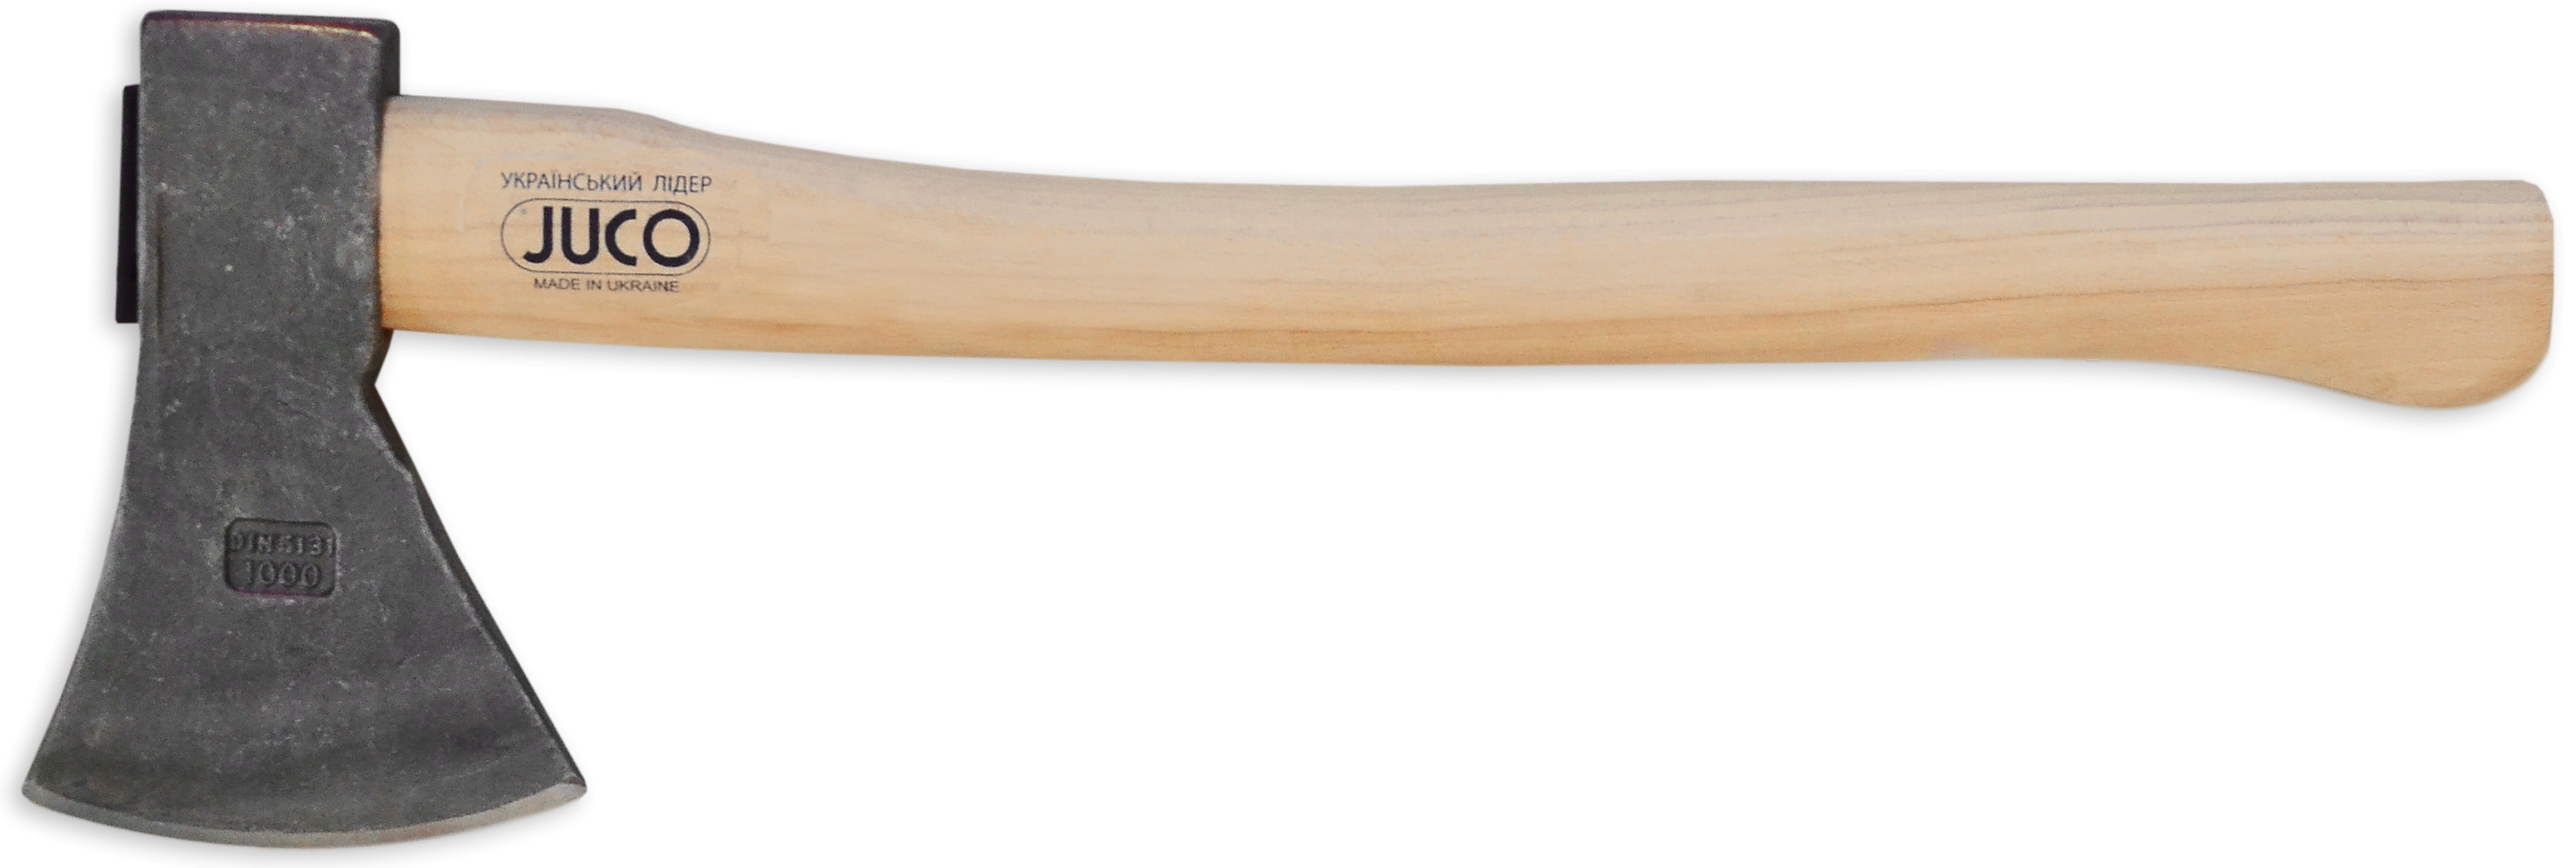 39-655 Топор с деревянной ручкой, JUCO (Украина), 800 г